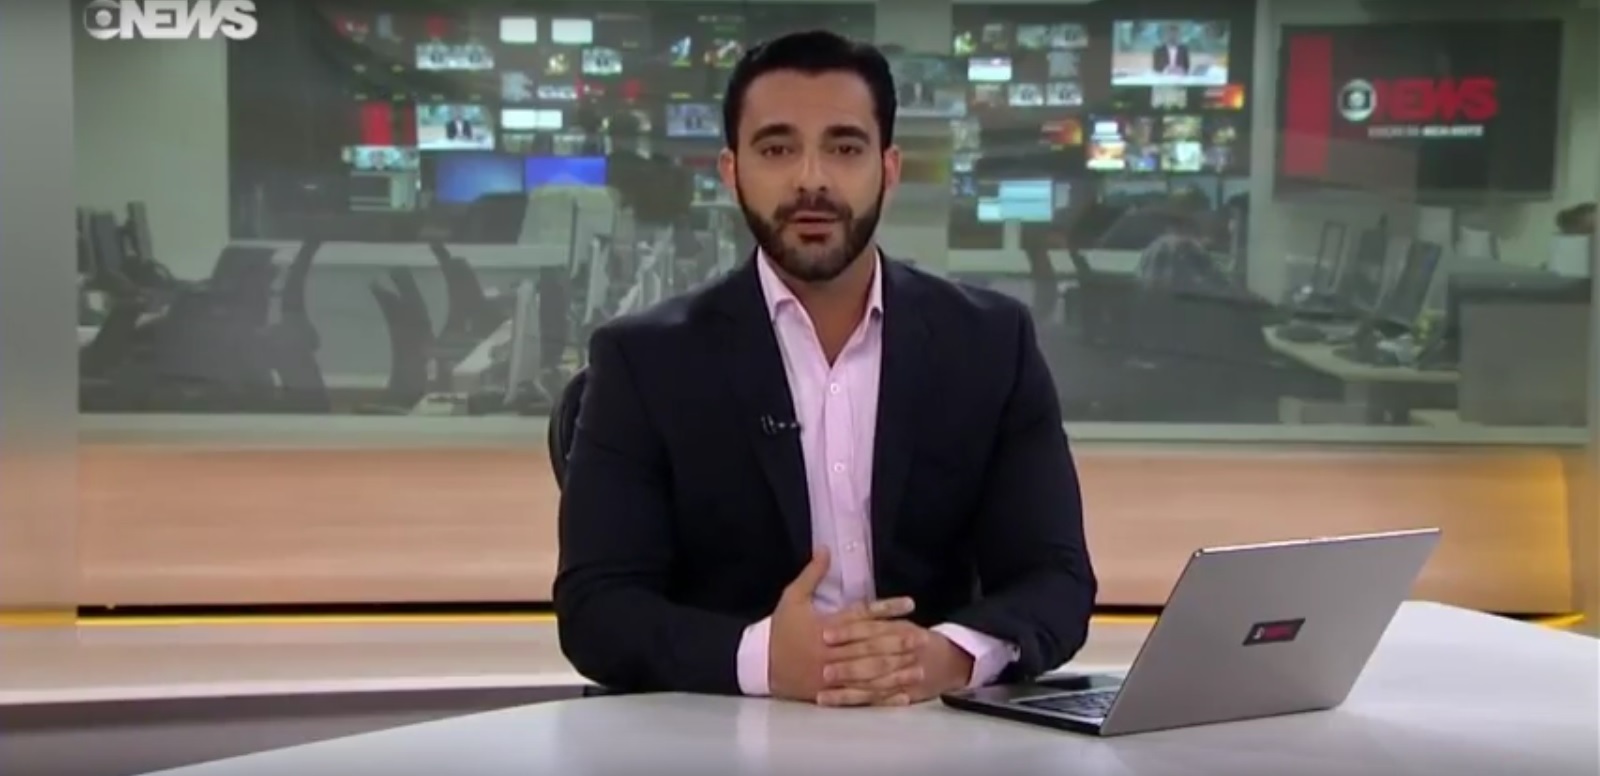 Os 30 jornalistas mais gatos da TV em 2017: Bernardo Menezes, Globo News